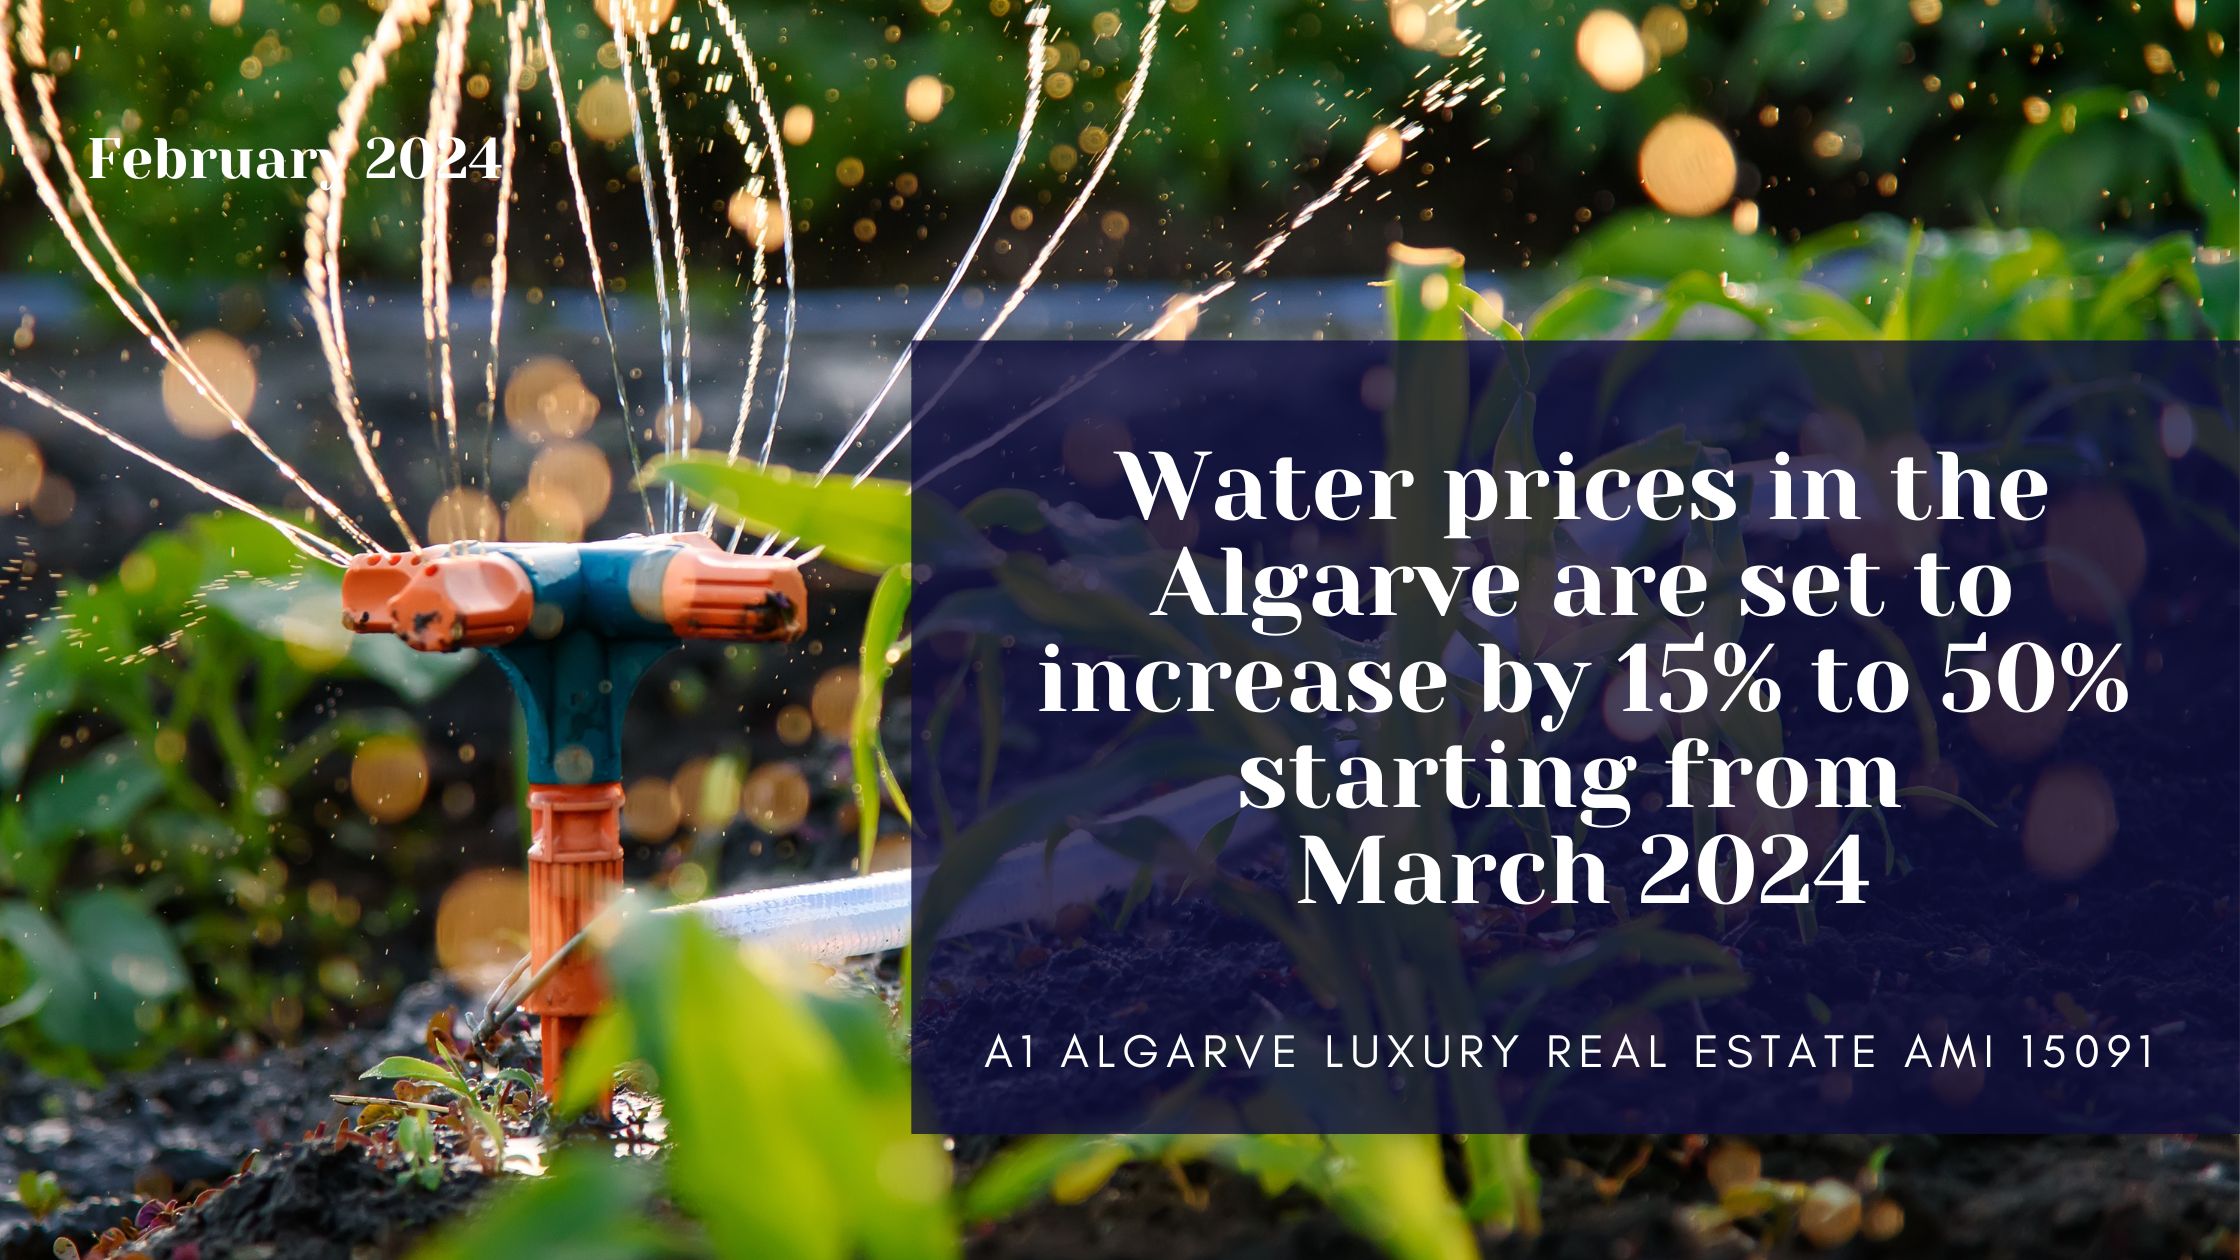 Os preços da água no Algarve deverão aumentar entre 15% e 50% a partir de março de 2024